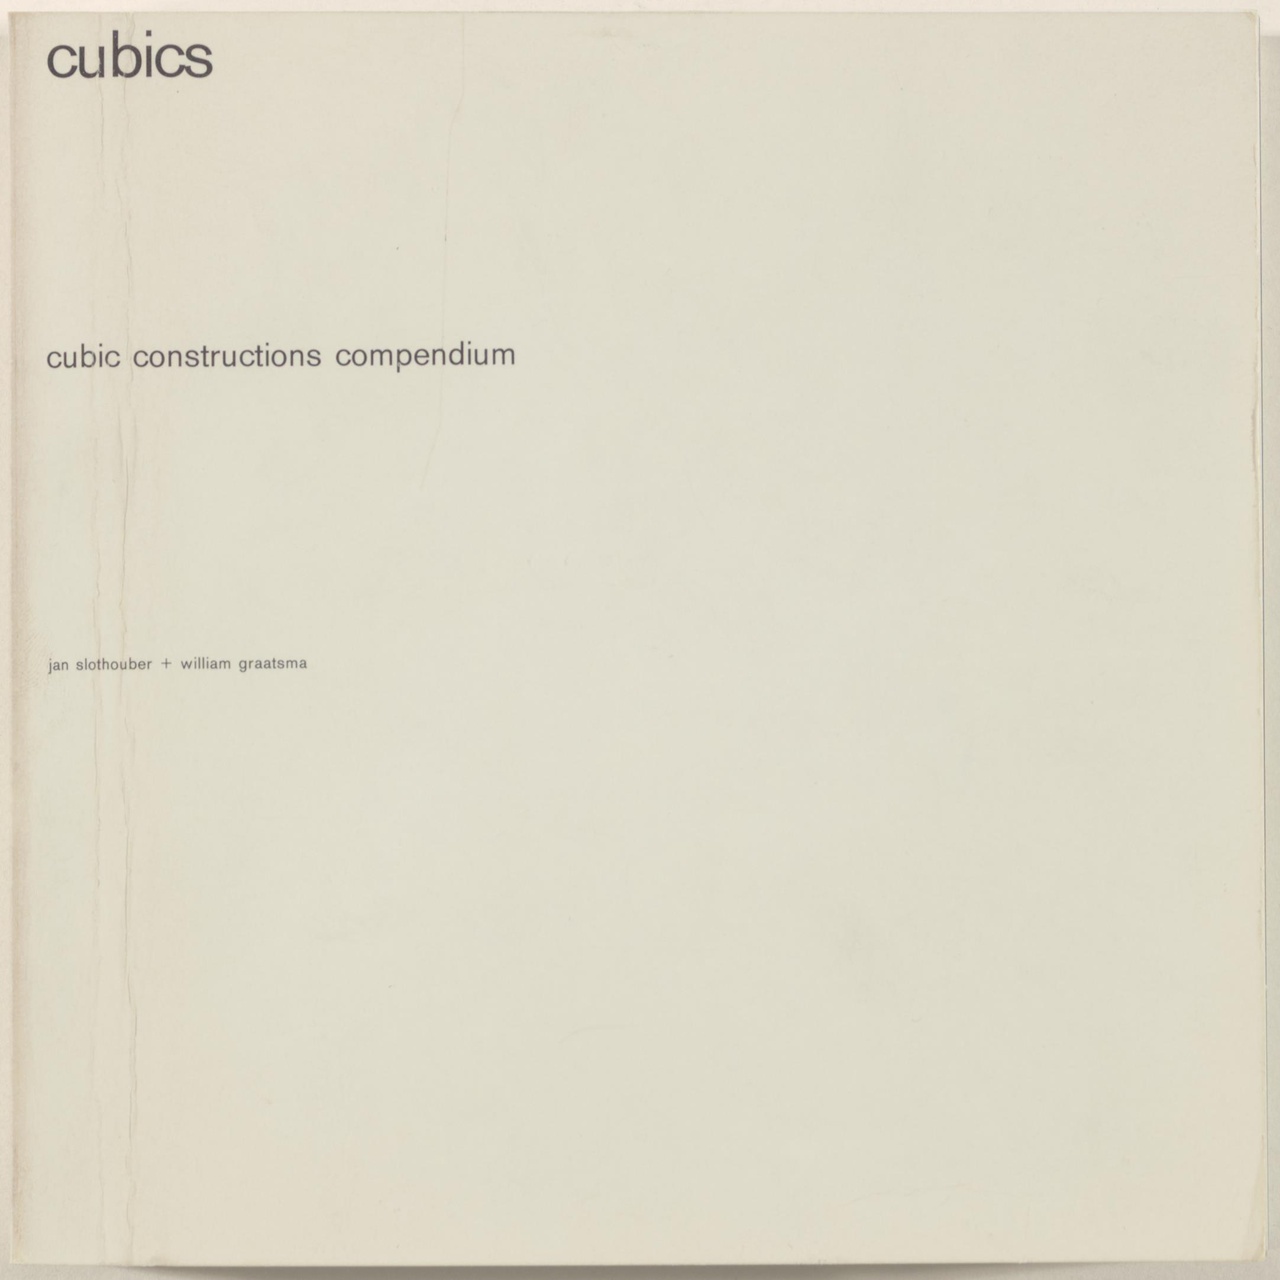 Cubics, cubic constructions compendium